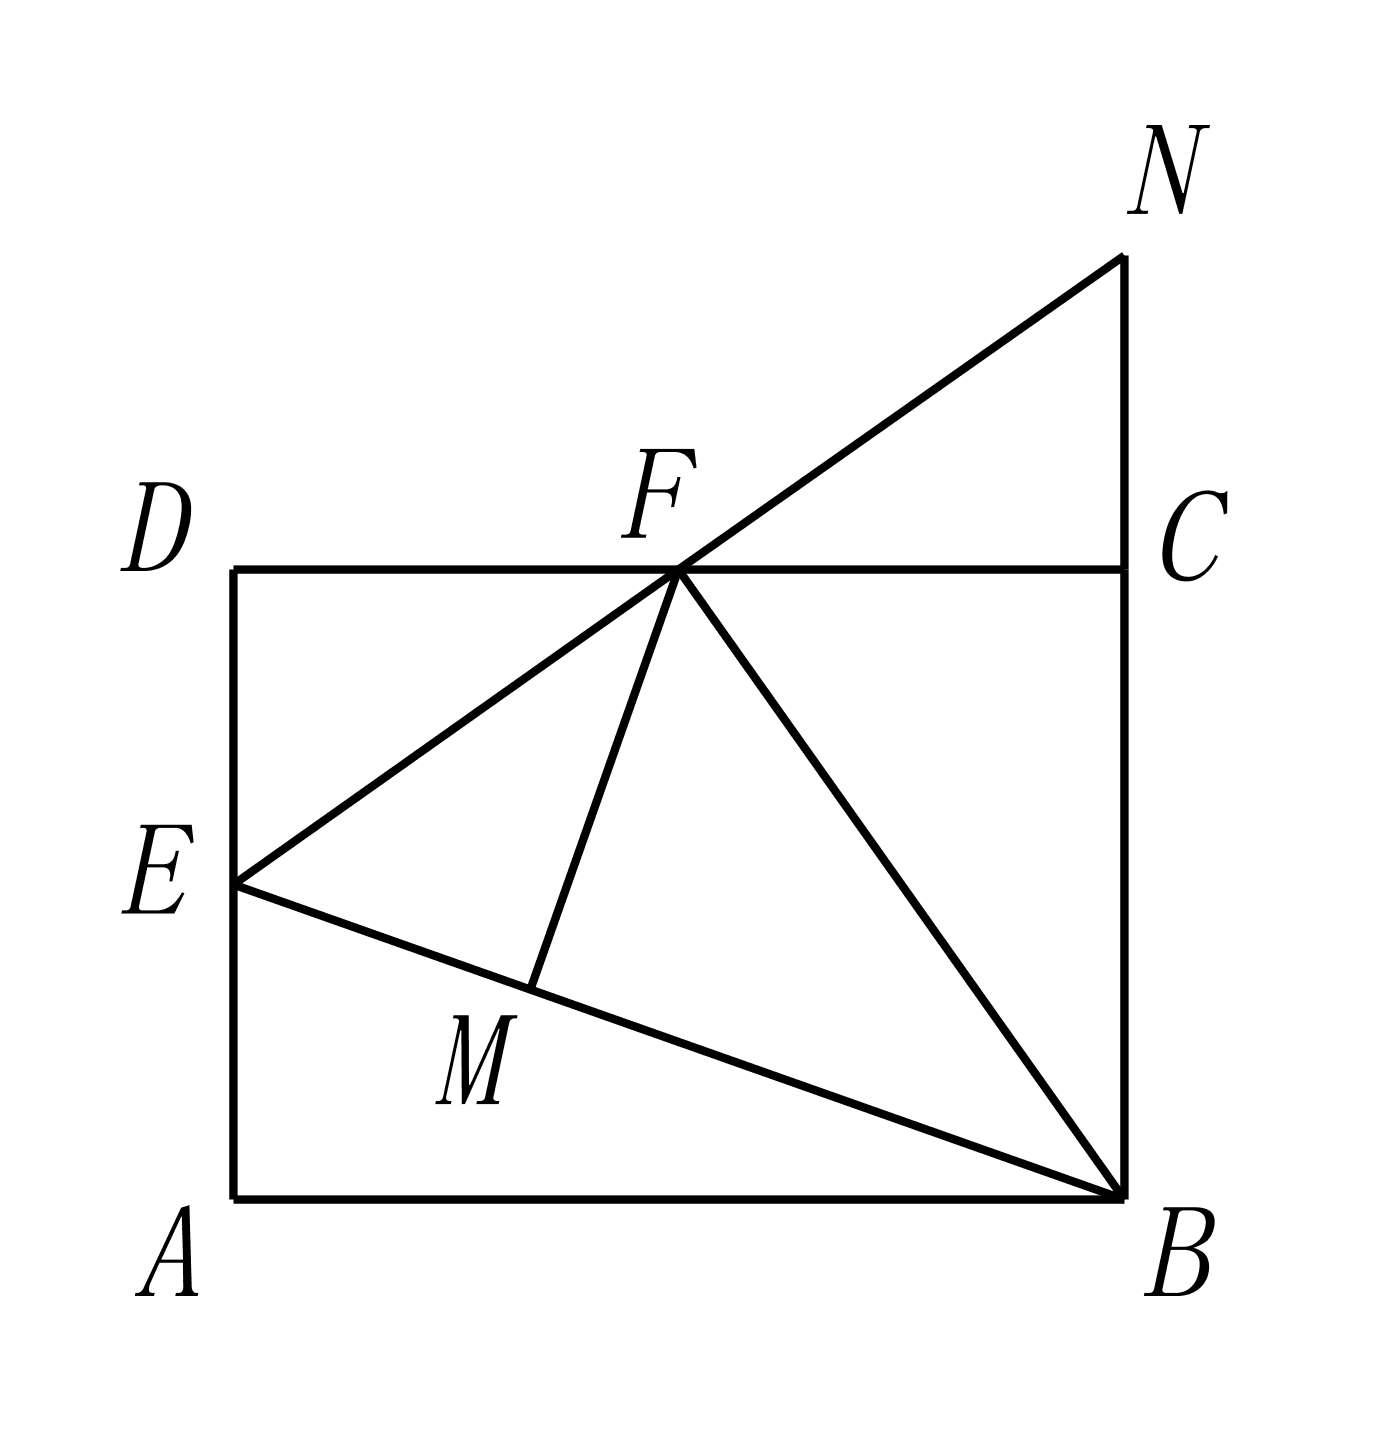 有下列结论:①df=cf;②bf⊥en;③△ben是等边三角形